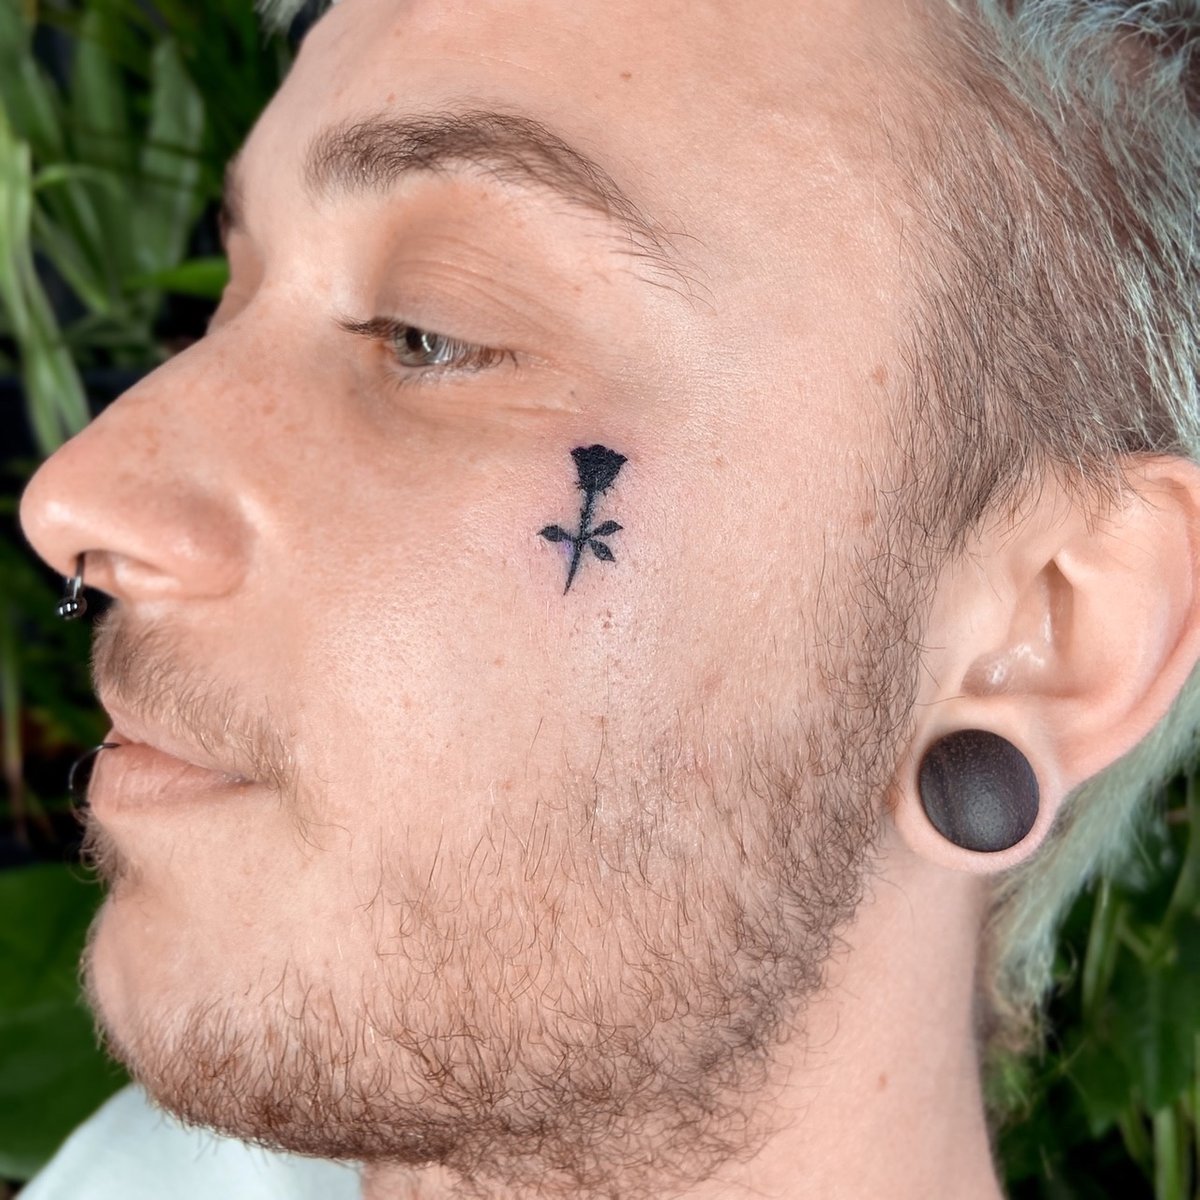 Spirytusz-tatuaż-Black & Grey-Blackwork / Blackout-Ignorant / Pato tattoo-Minimalizm